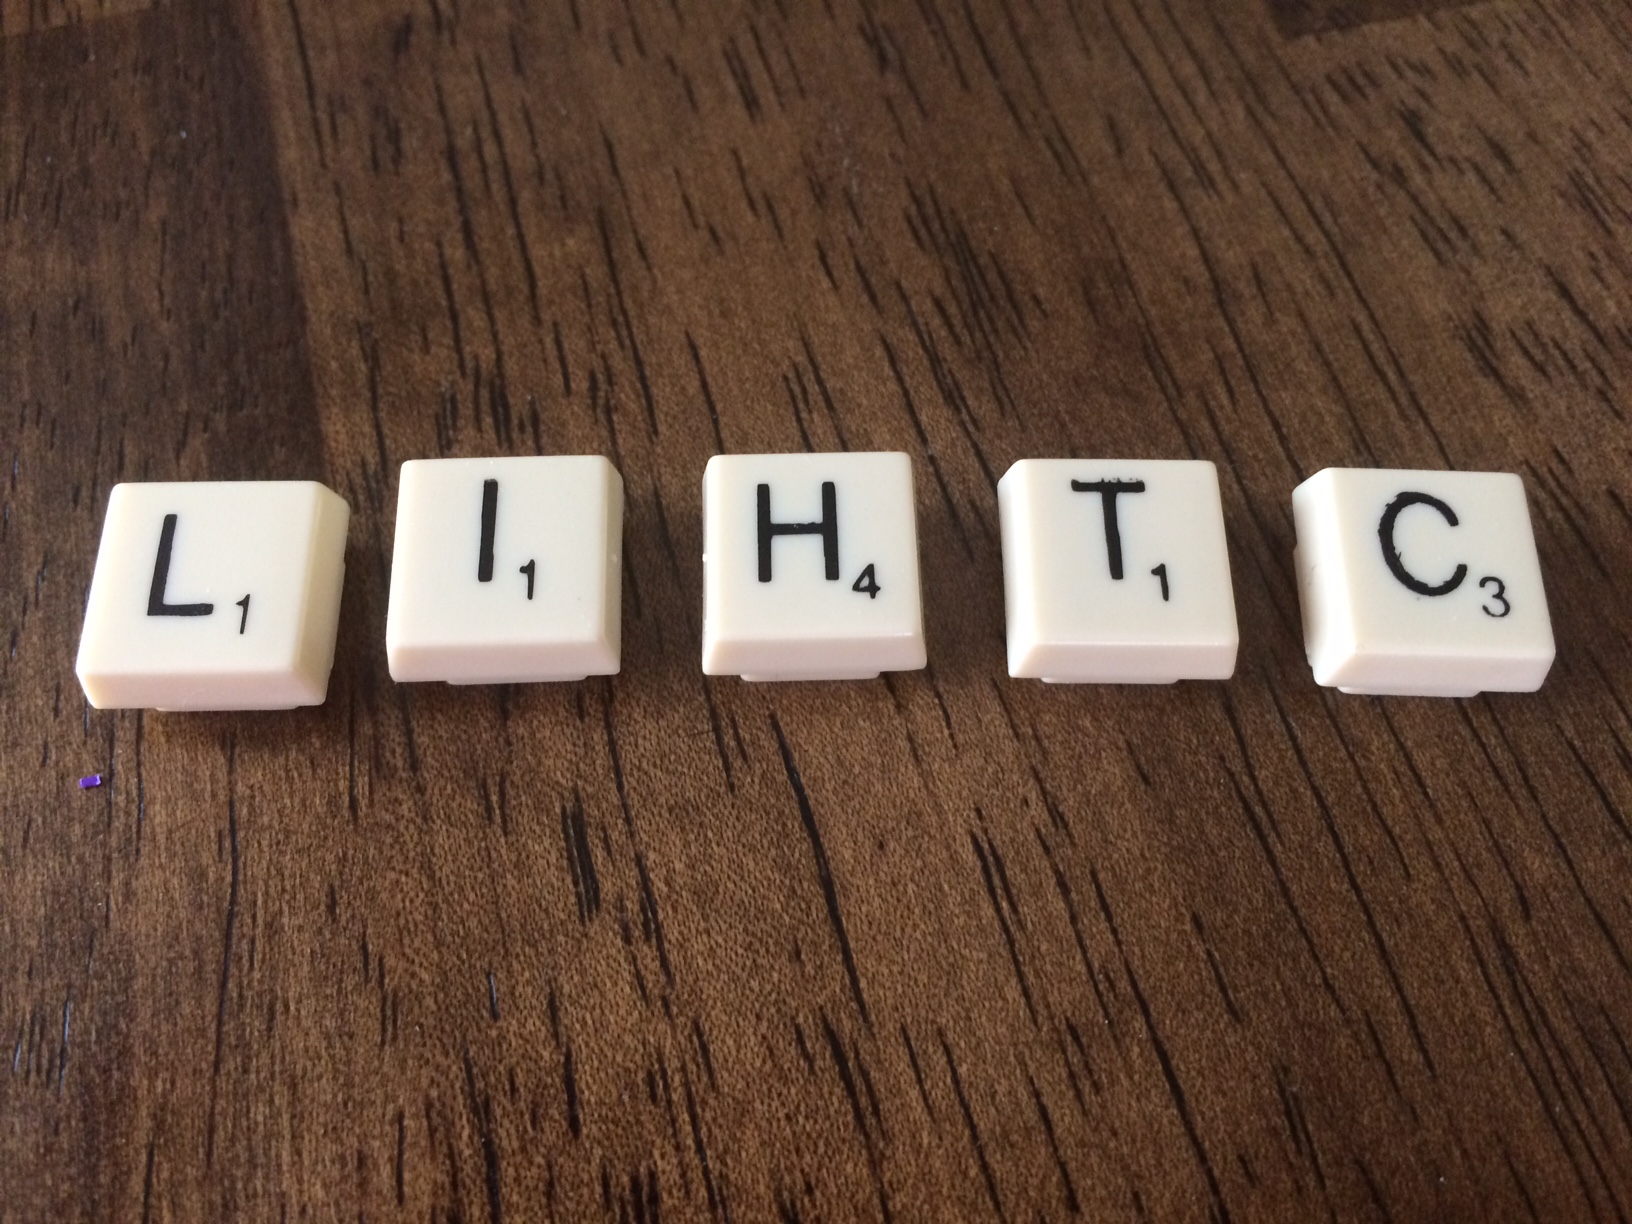 Scrabble letters spelling LIHTC